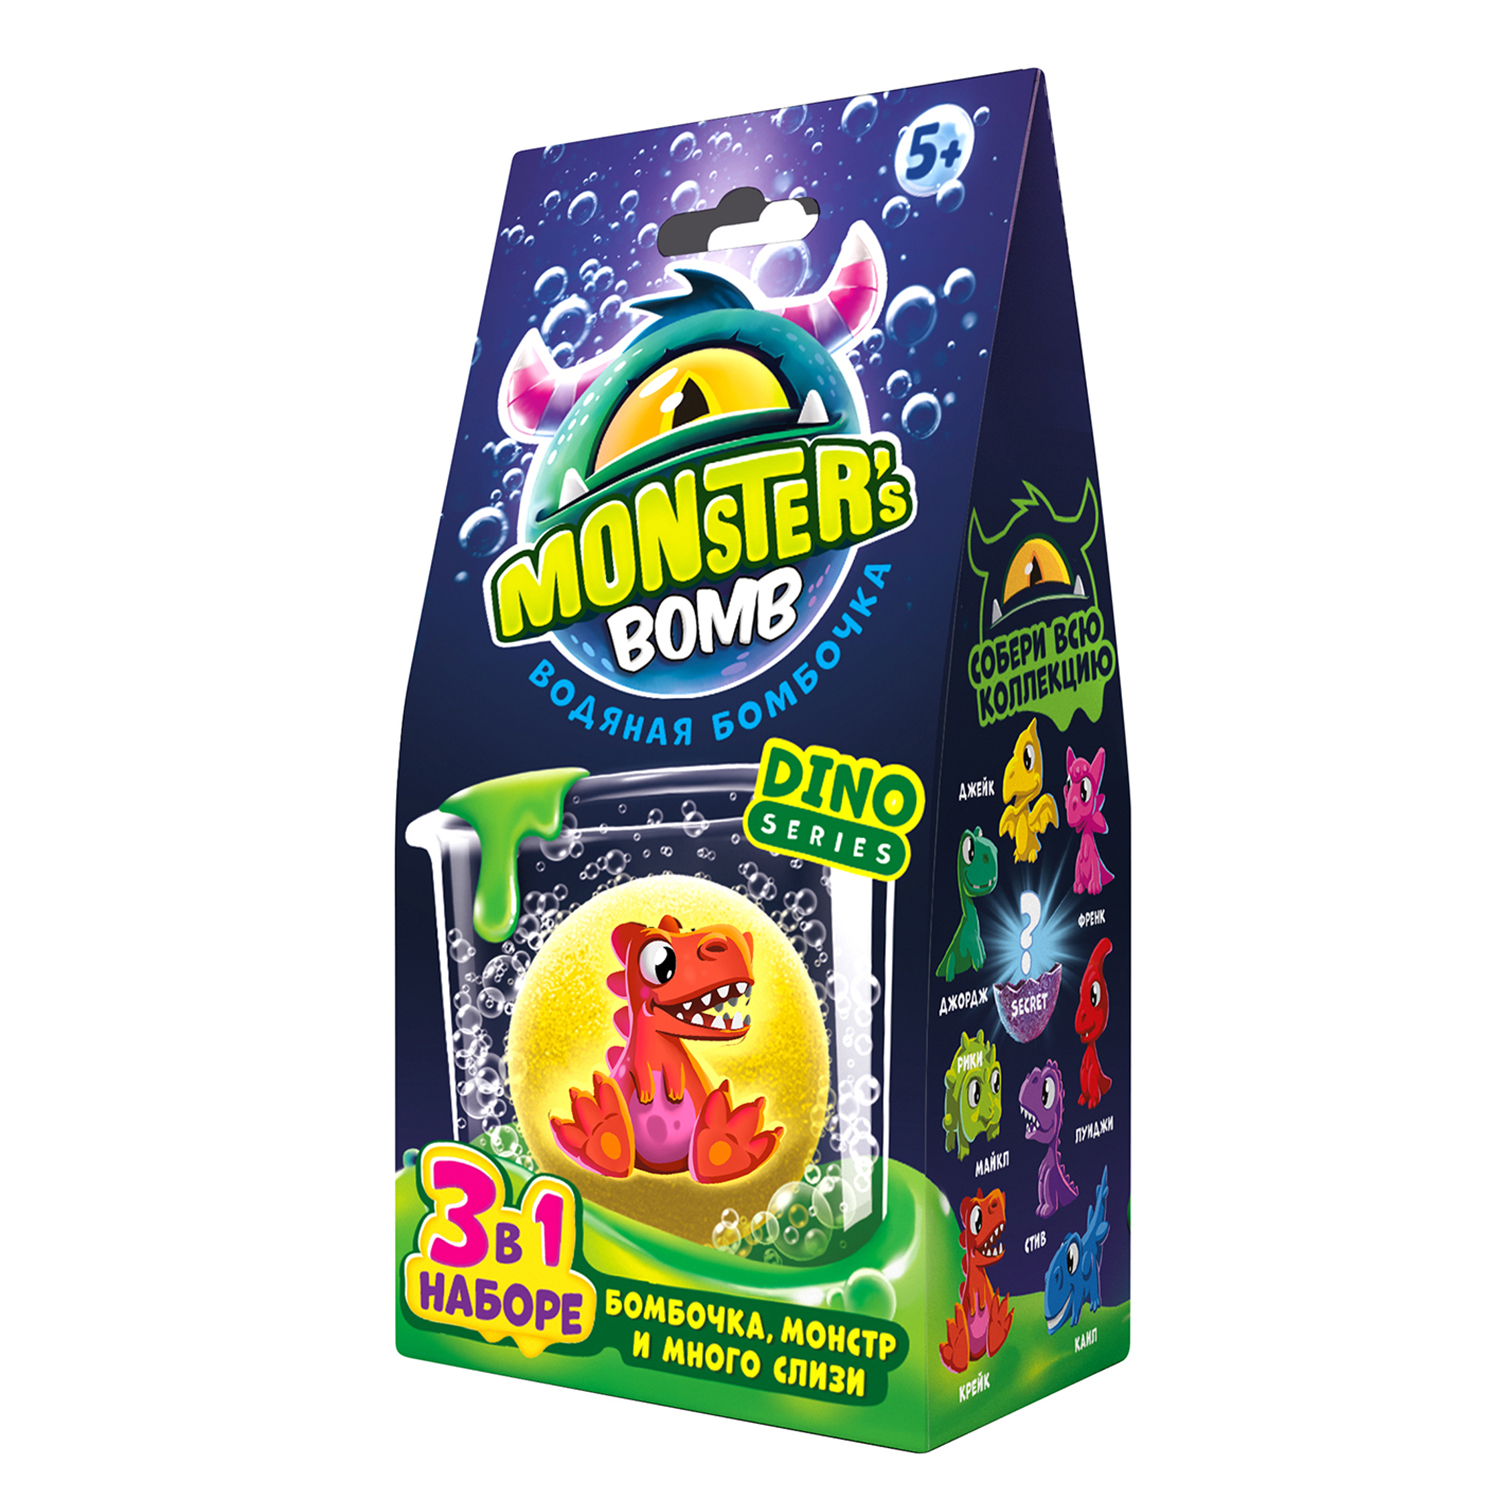 Набор химический Monsters bomb с игрушкой MB002P - фото 2